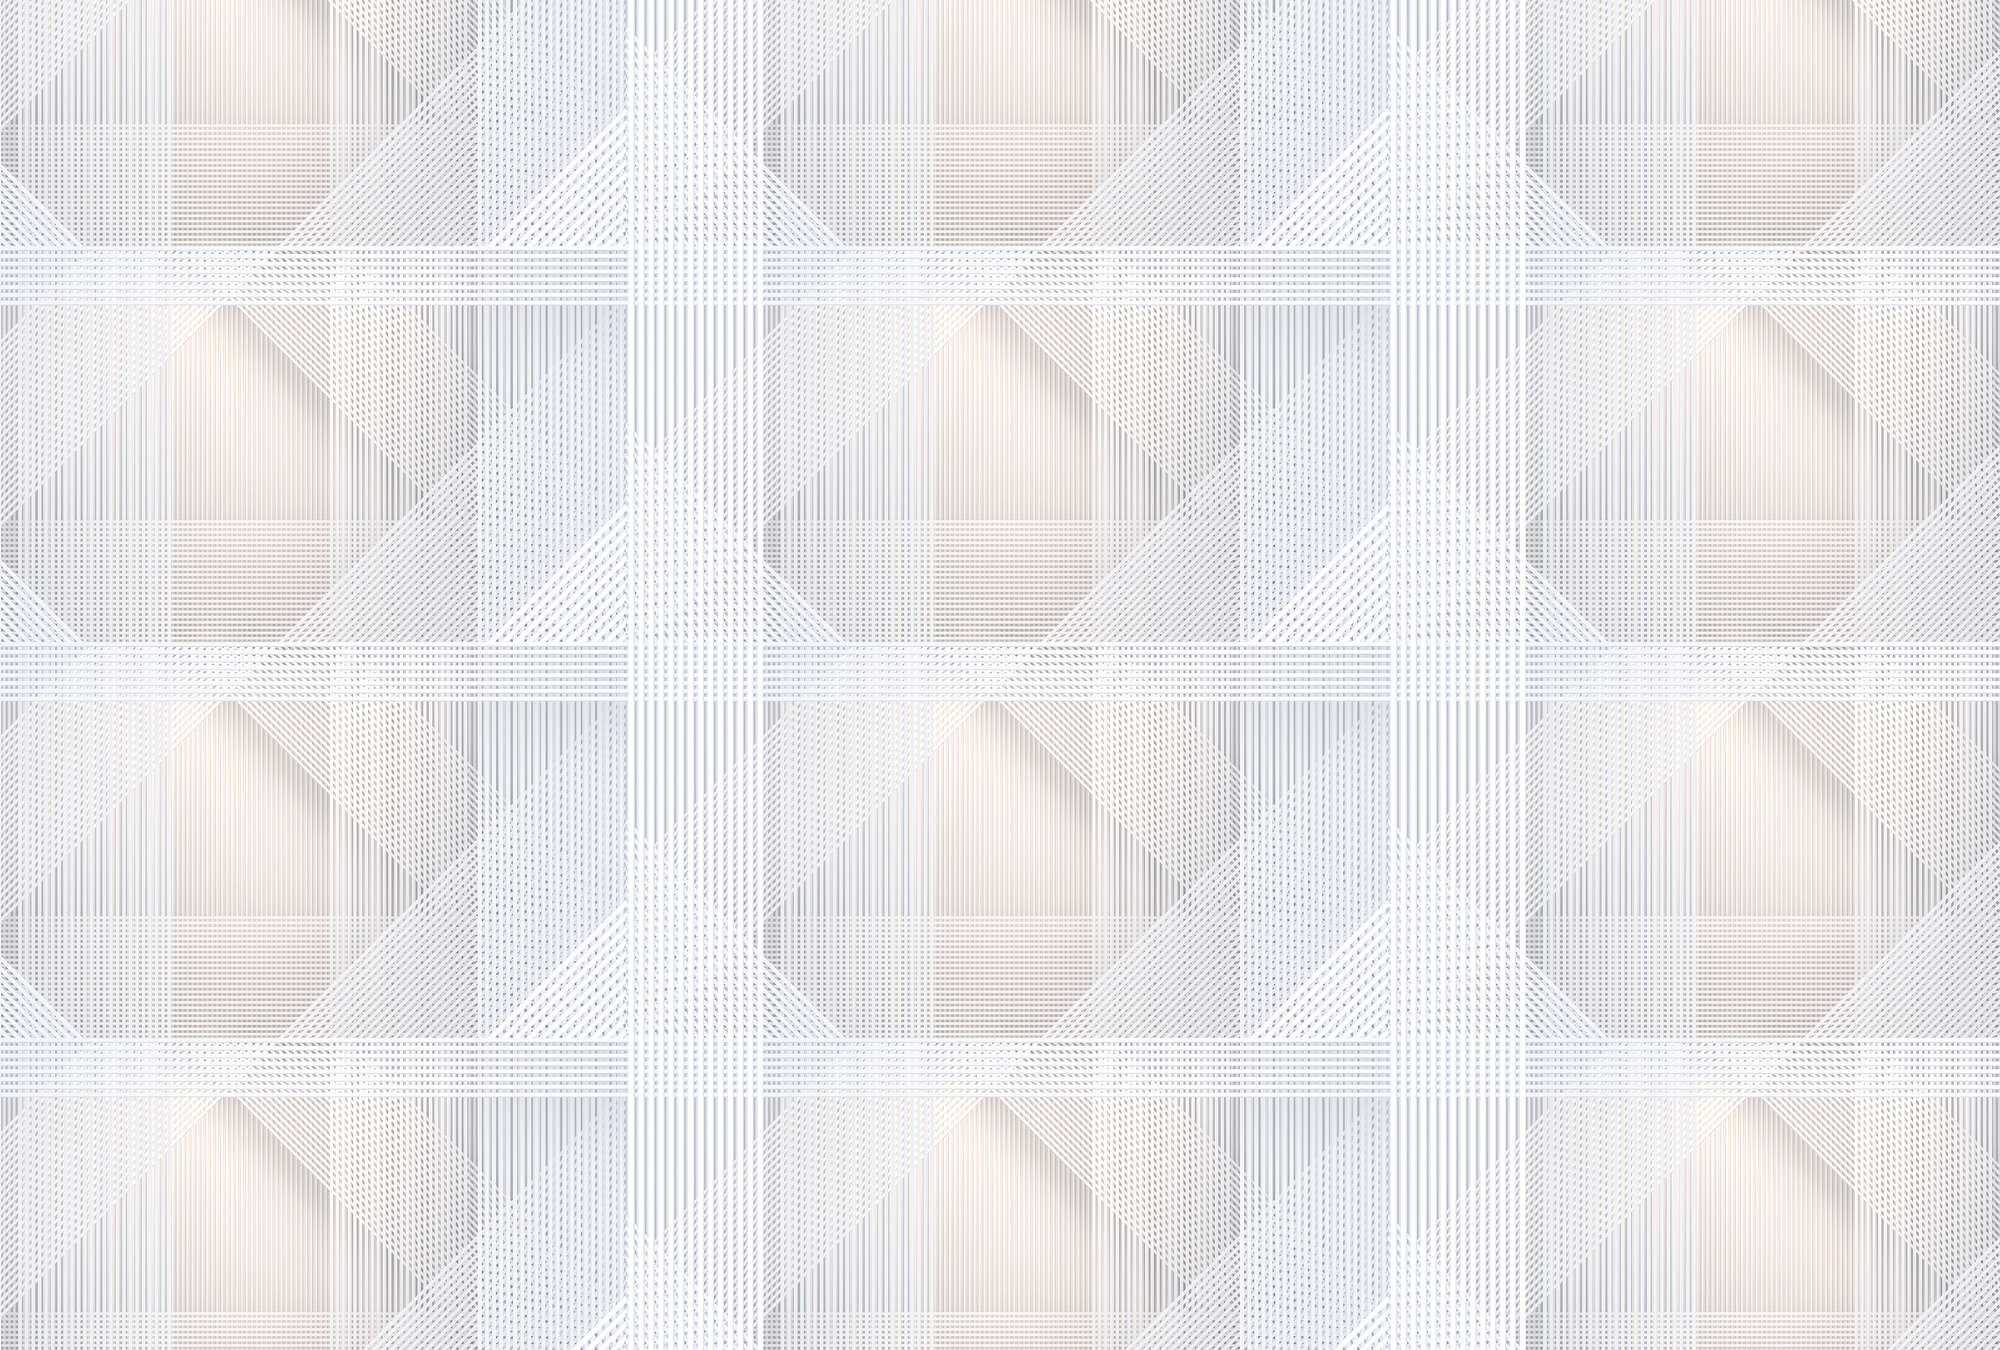             Strings 1 - Fototapete geometrisches Streifen Muster – Grau, Orange | Mattes Glattvlies
        